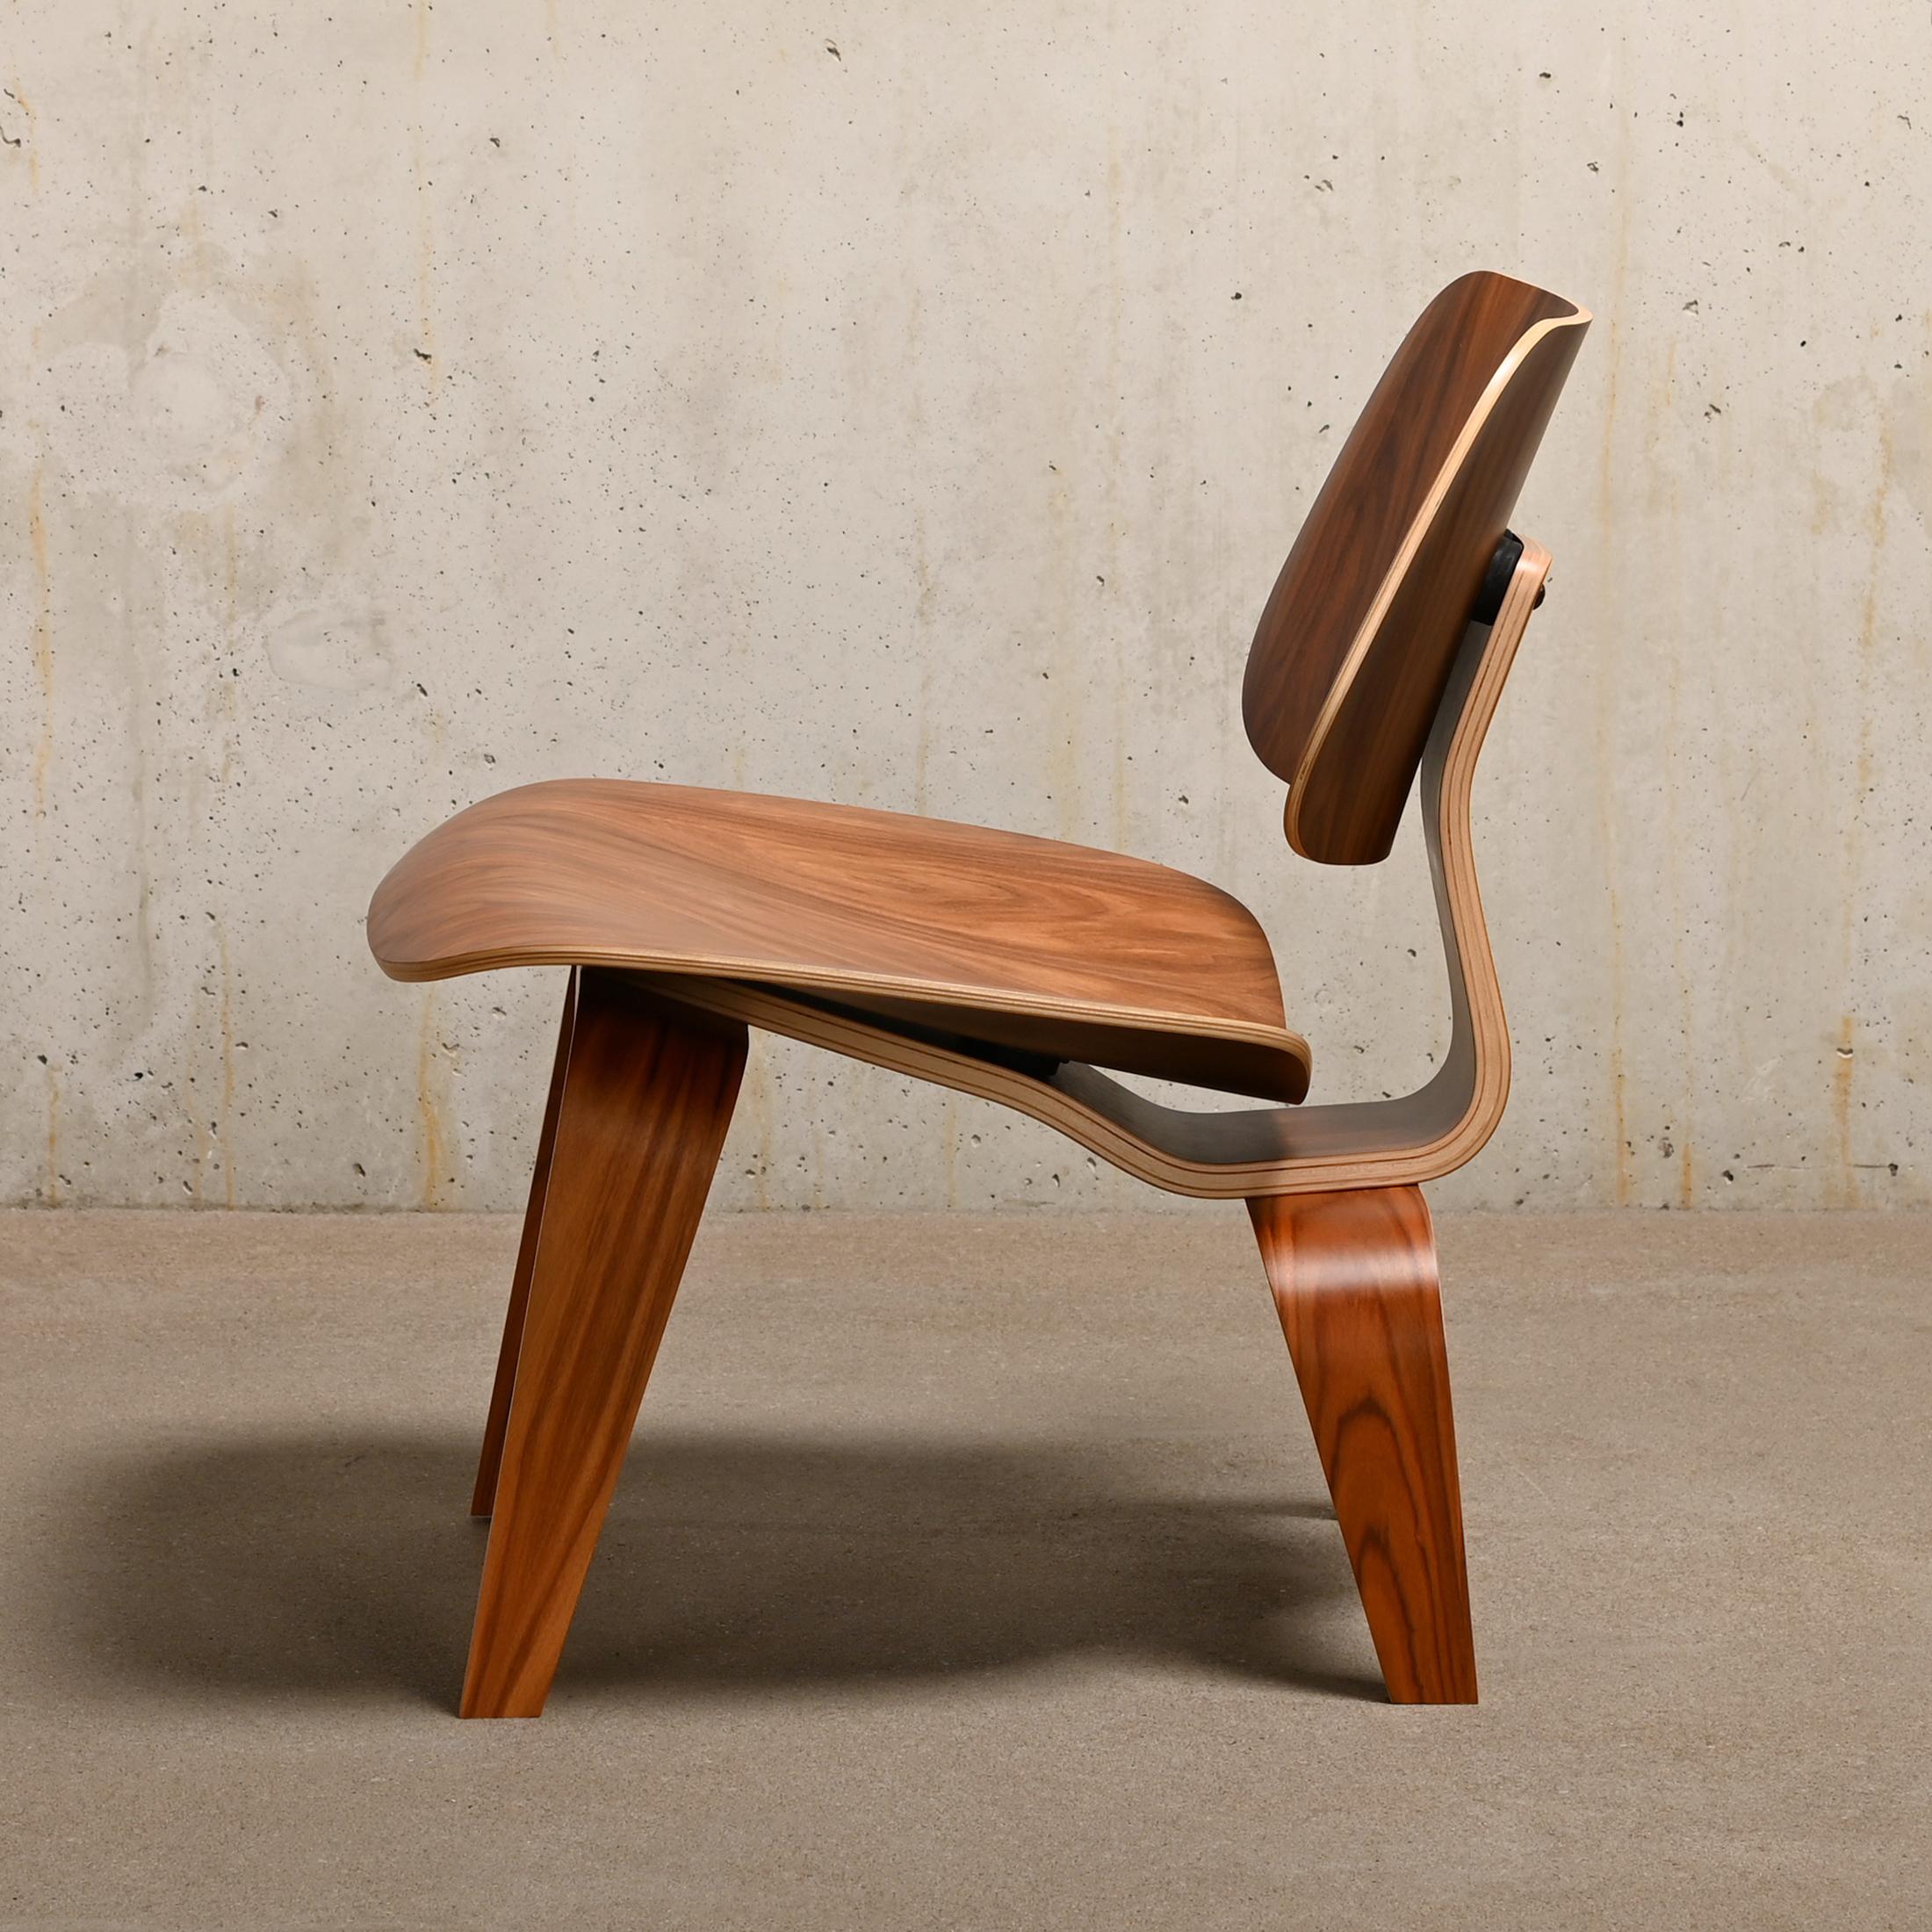 Der ikonische LCW Lounge Chair wurde von Charles & Ray Eames aus Santos Palisander Sperrholz entworfen und von Herman Miller USA hergestellt. Das Furnier und der Stuhl sind in sehr gutem / ausgezeichnetem, neuwertigem Zustand mit minimalen